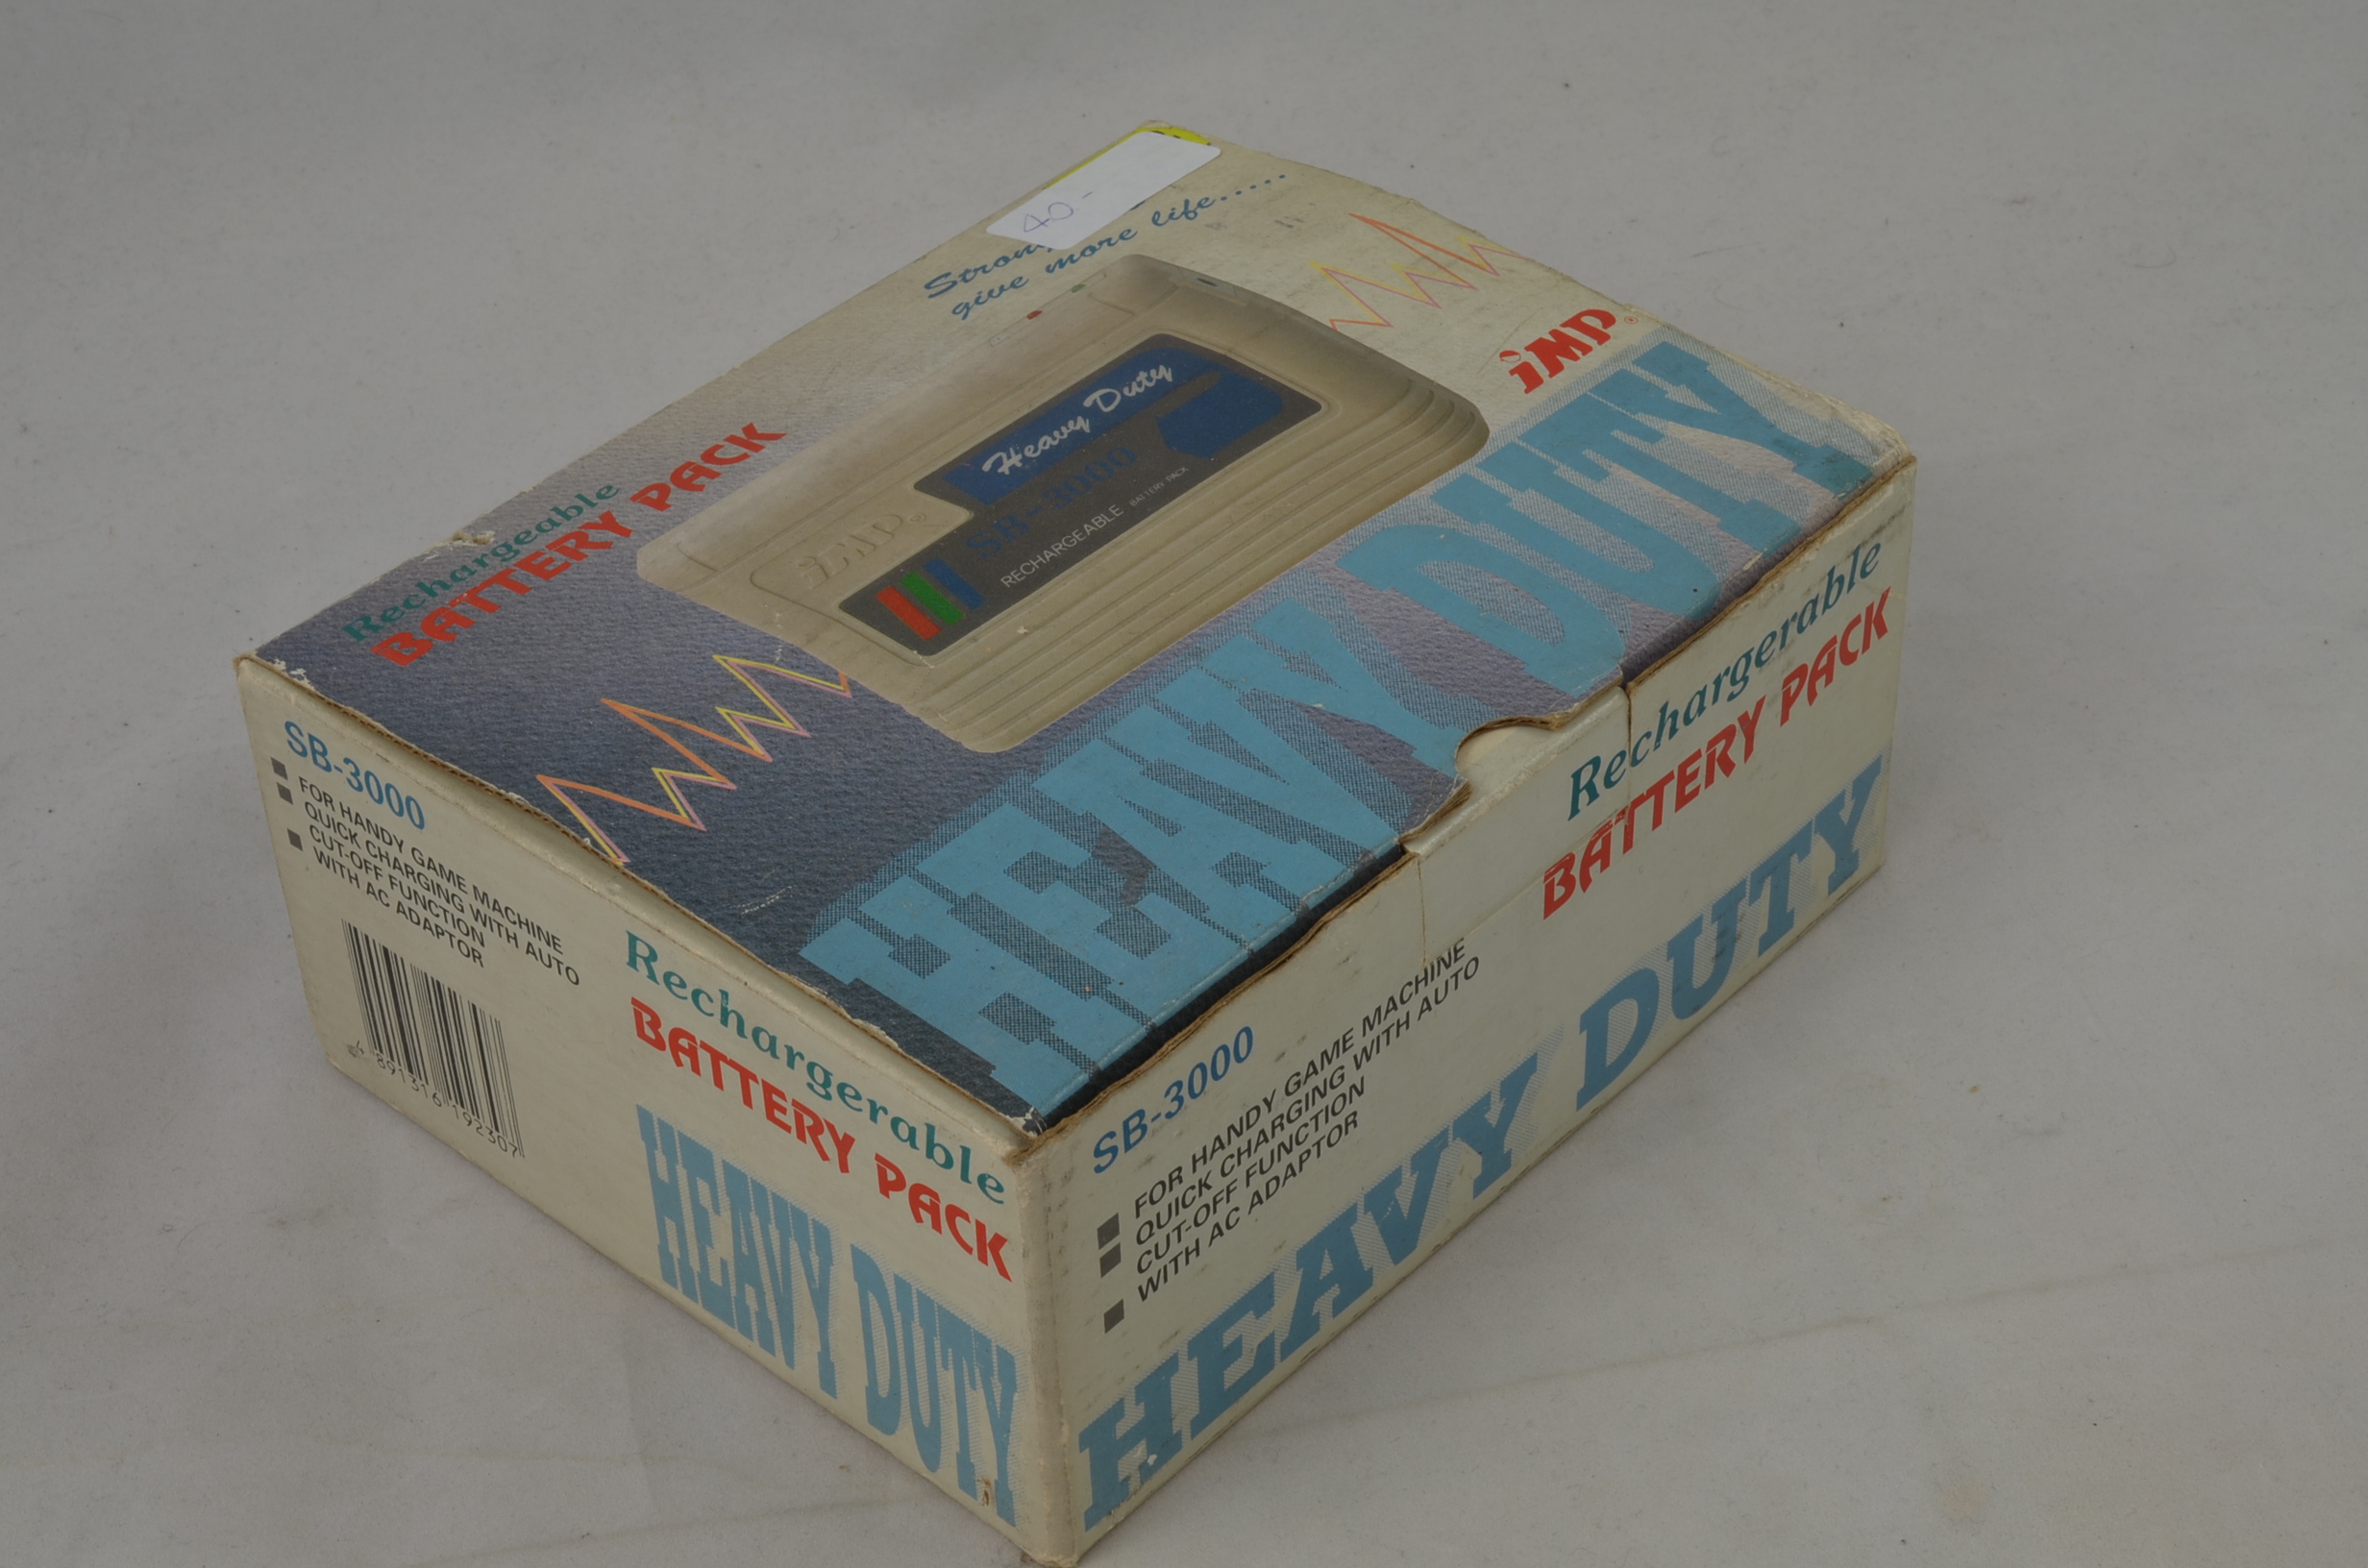 Produktbild von Heavy Duty Battery Pack für Game Boy mit OVP